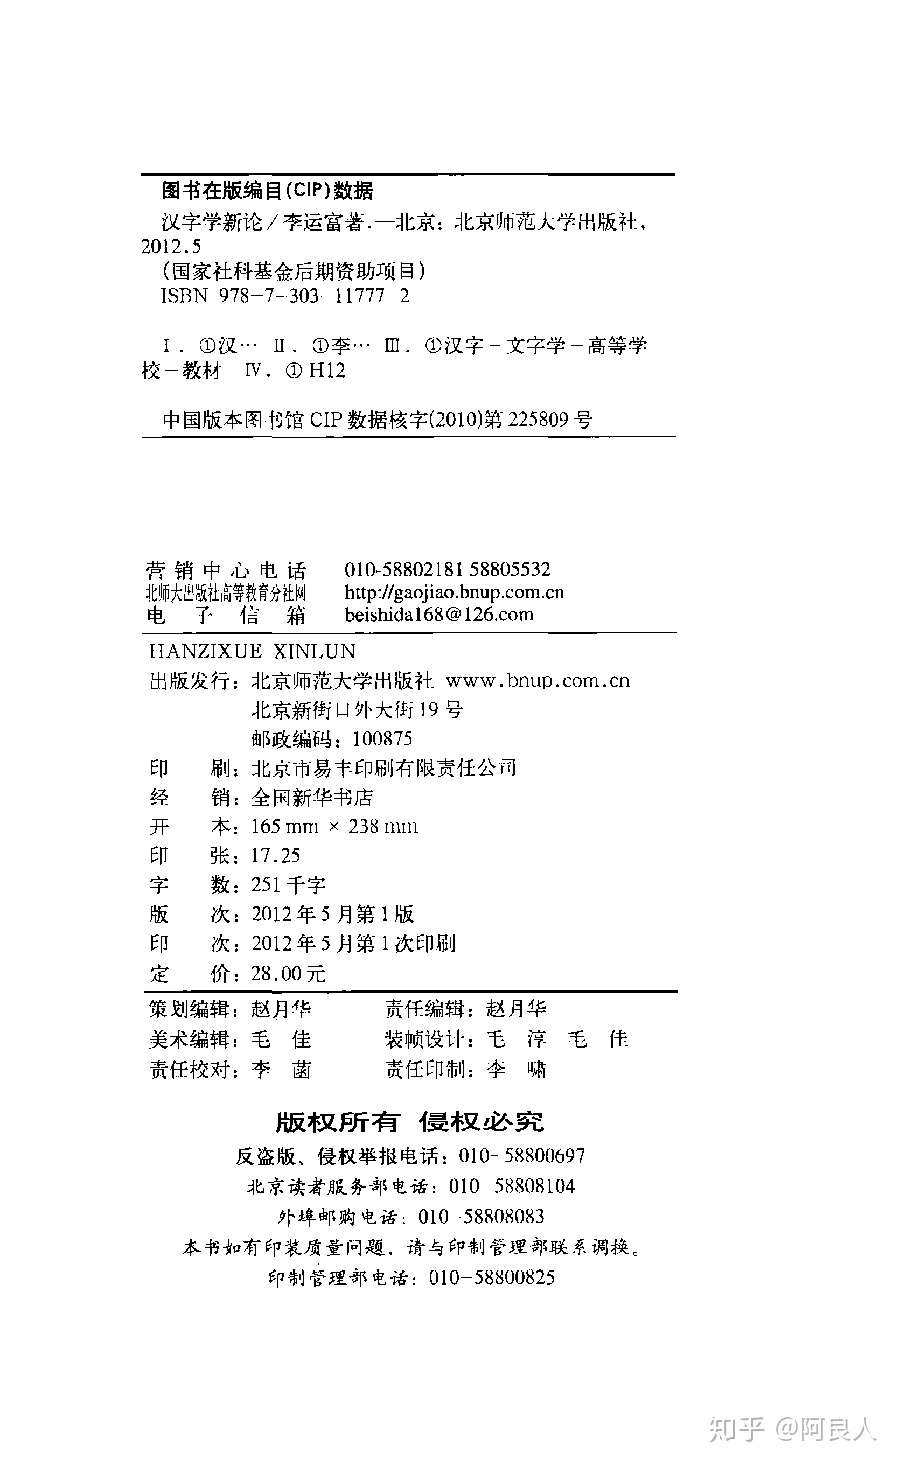 0502 漢字學新論 目錄索引數位化完成 知乎